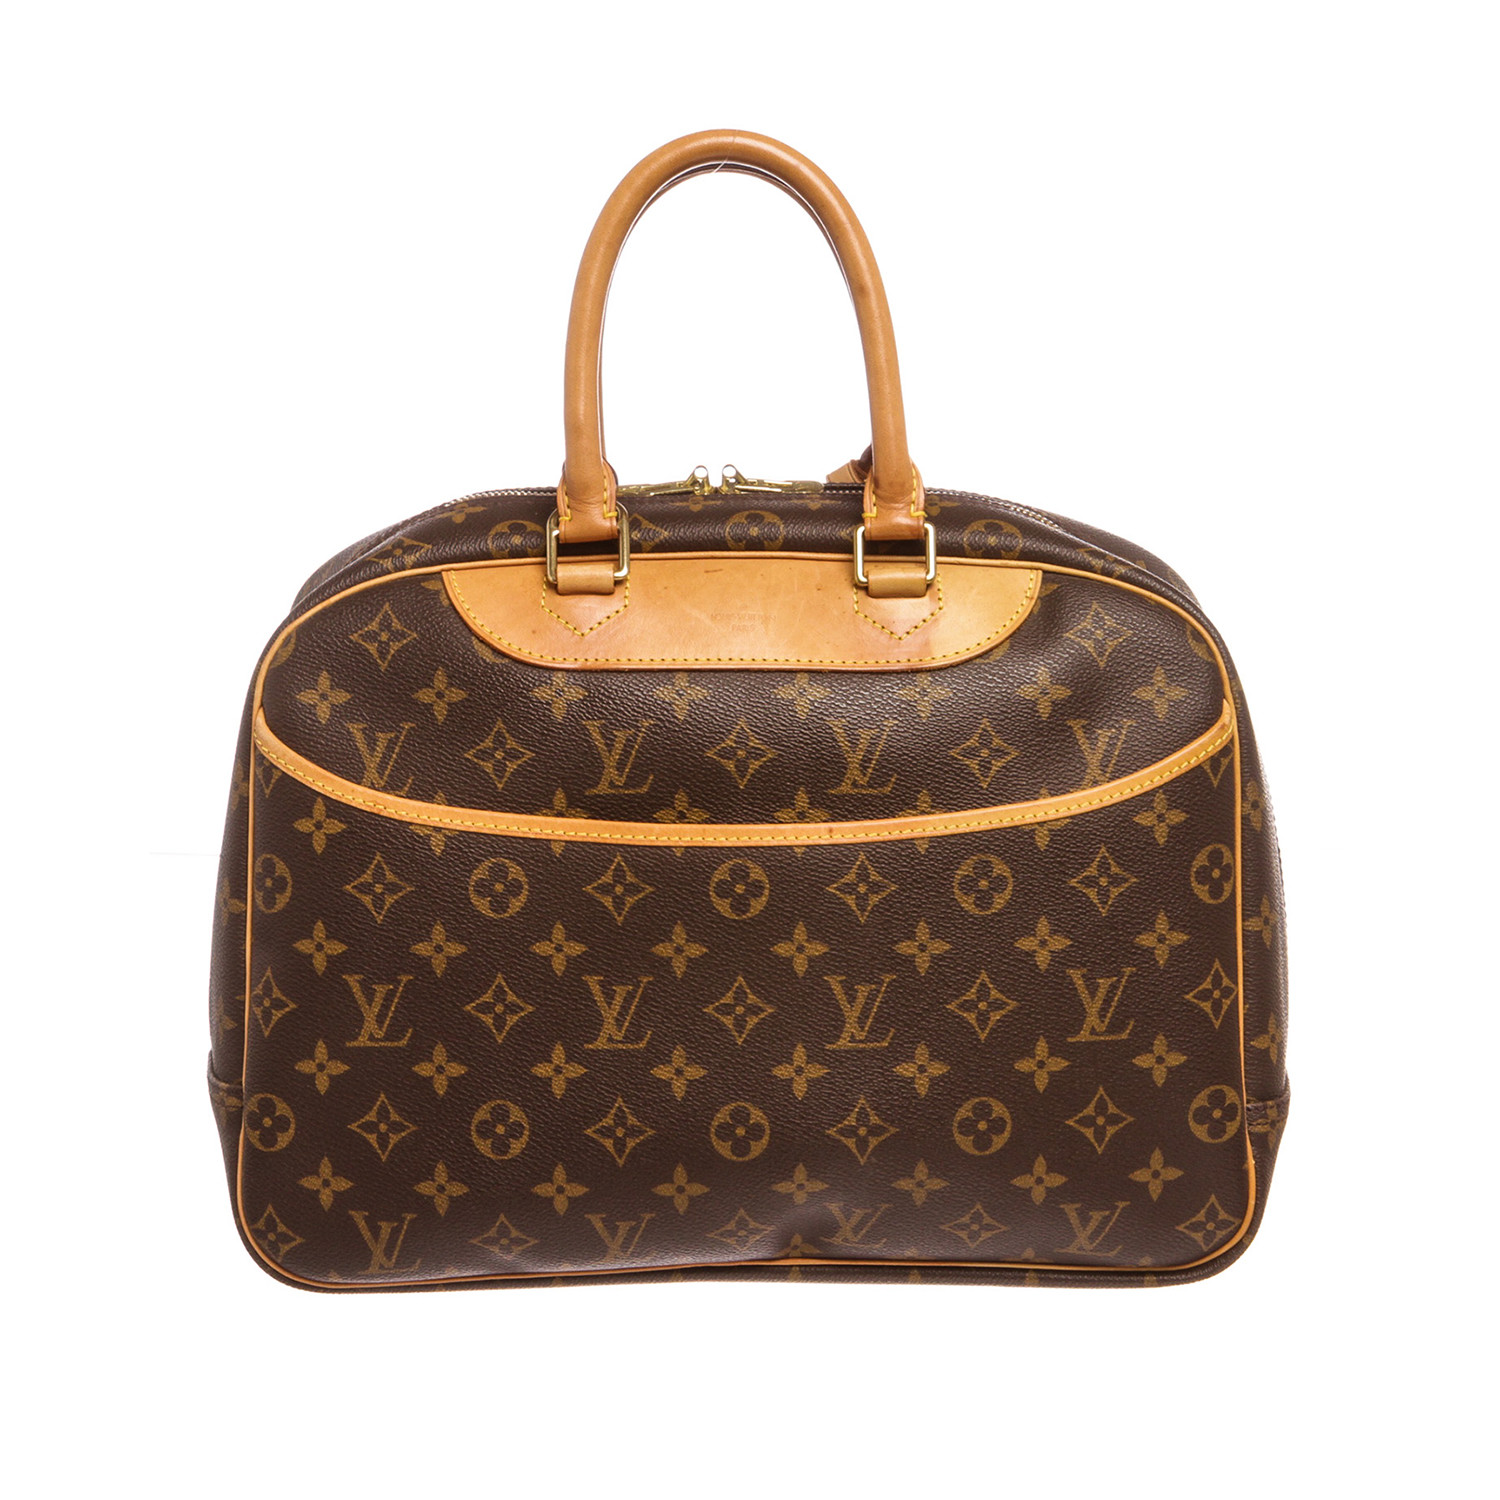 Doc Louis Vuitton Bags - Vestiaire Collective